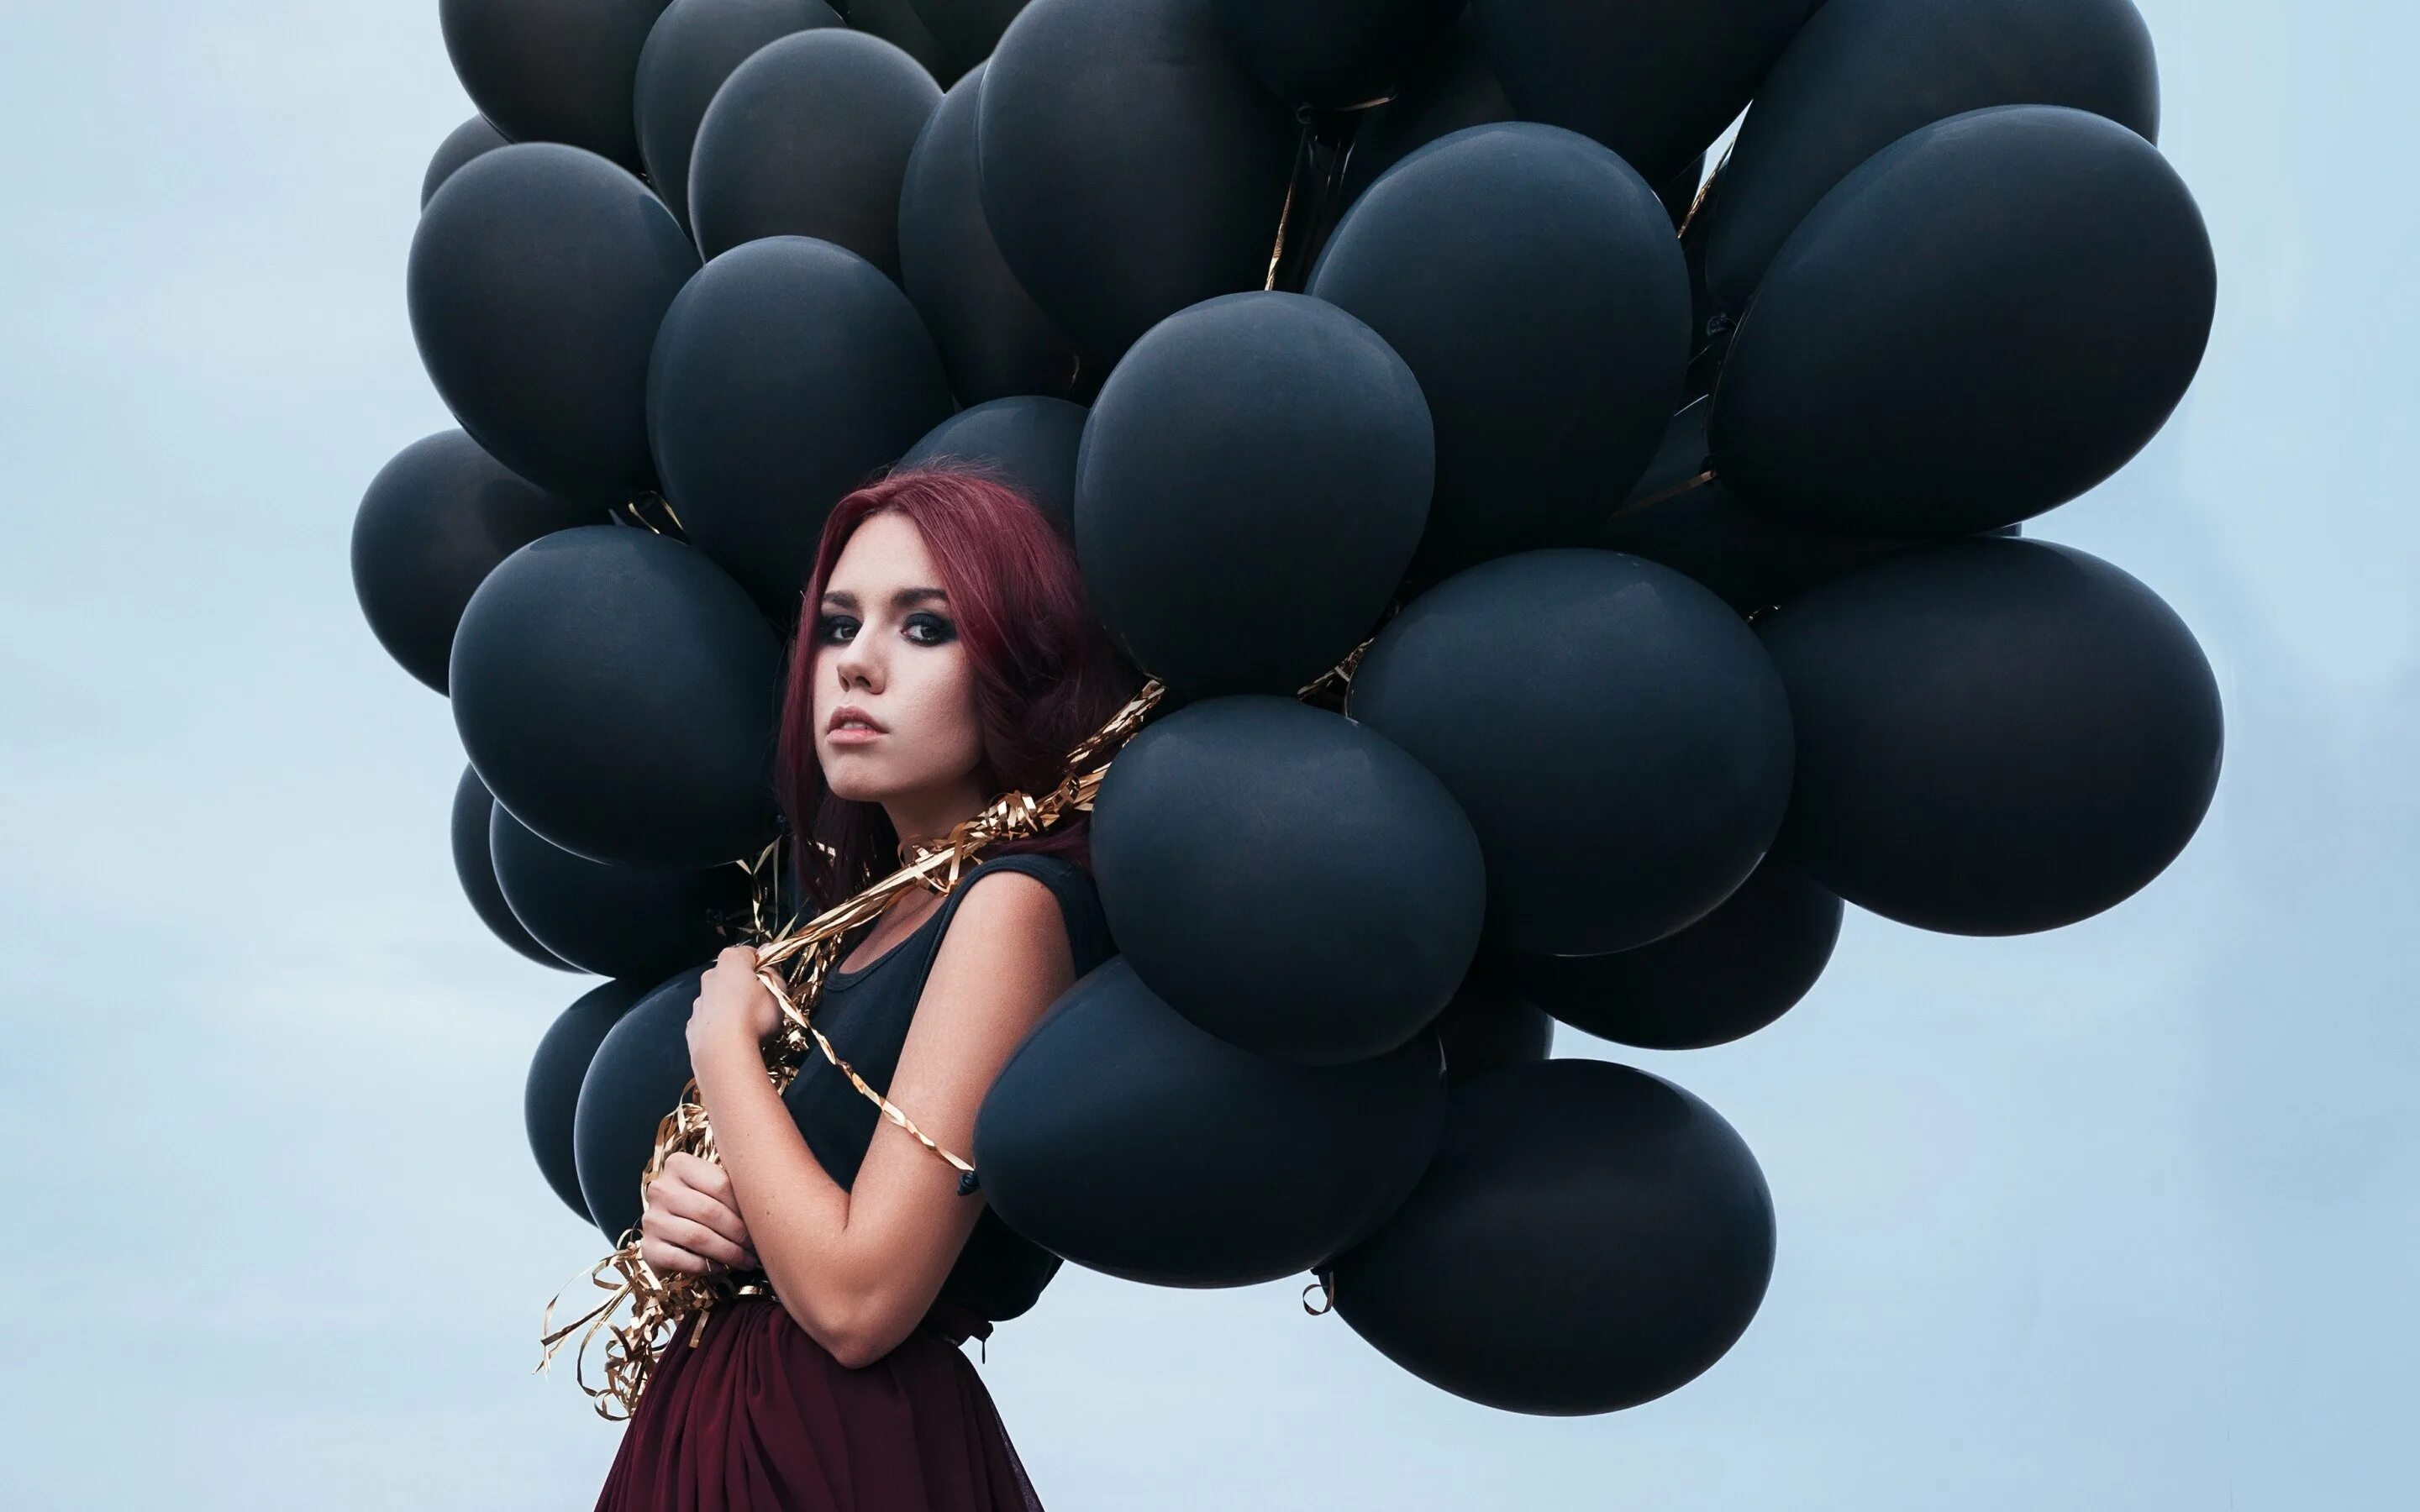 Девушка с воздушными шарами. Красивые шарики для девушки. Фотосессия с воздушными шарами. Девушка с шариками воздушными.